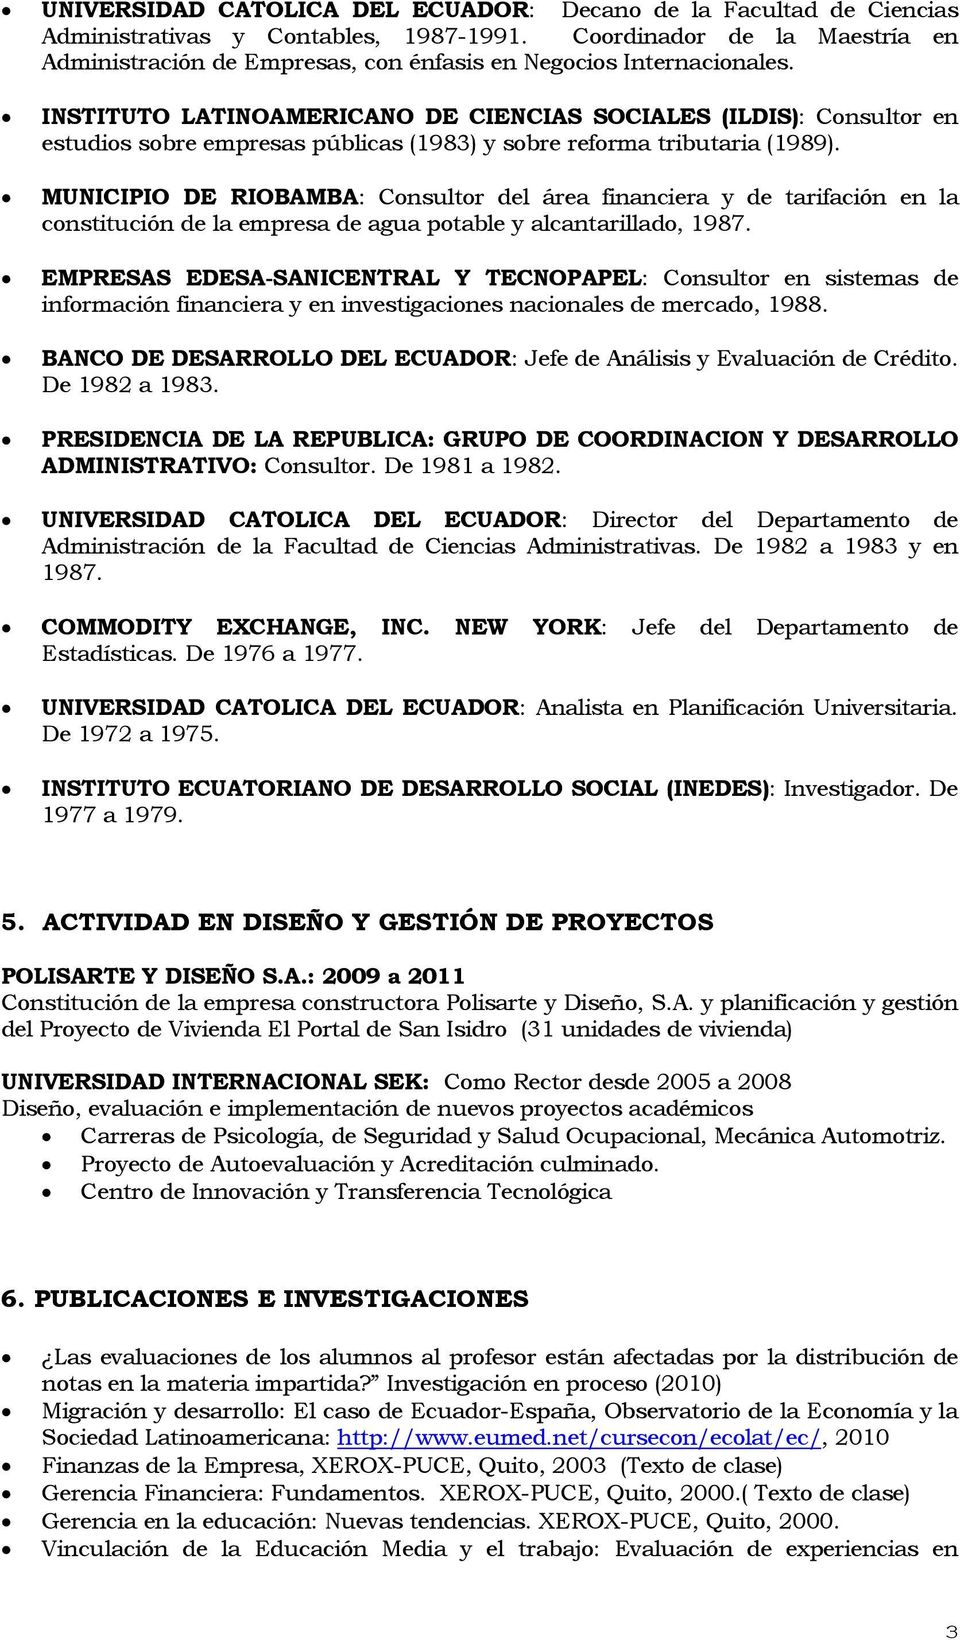 INSTITUTO LATINOAMERICANO DE CIENCIAS SOCIALES (ILDIS): Consultor en estudios sobre empresas públicas (1983) y sobre reforma tributaria (1989).